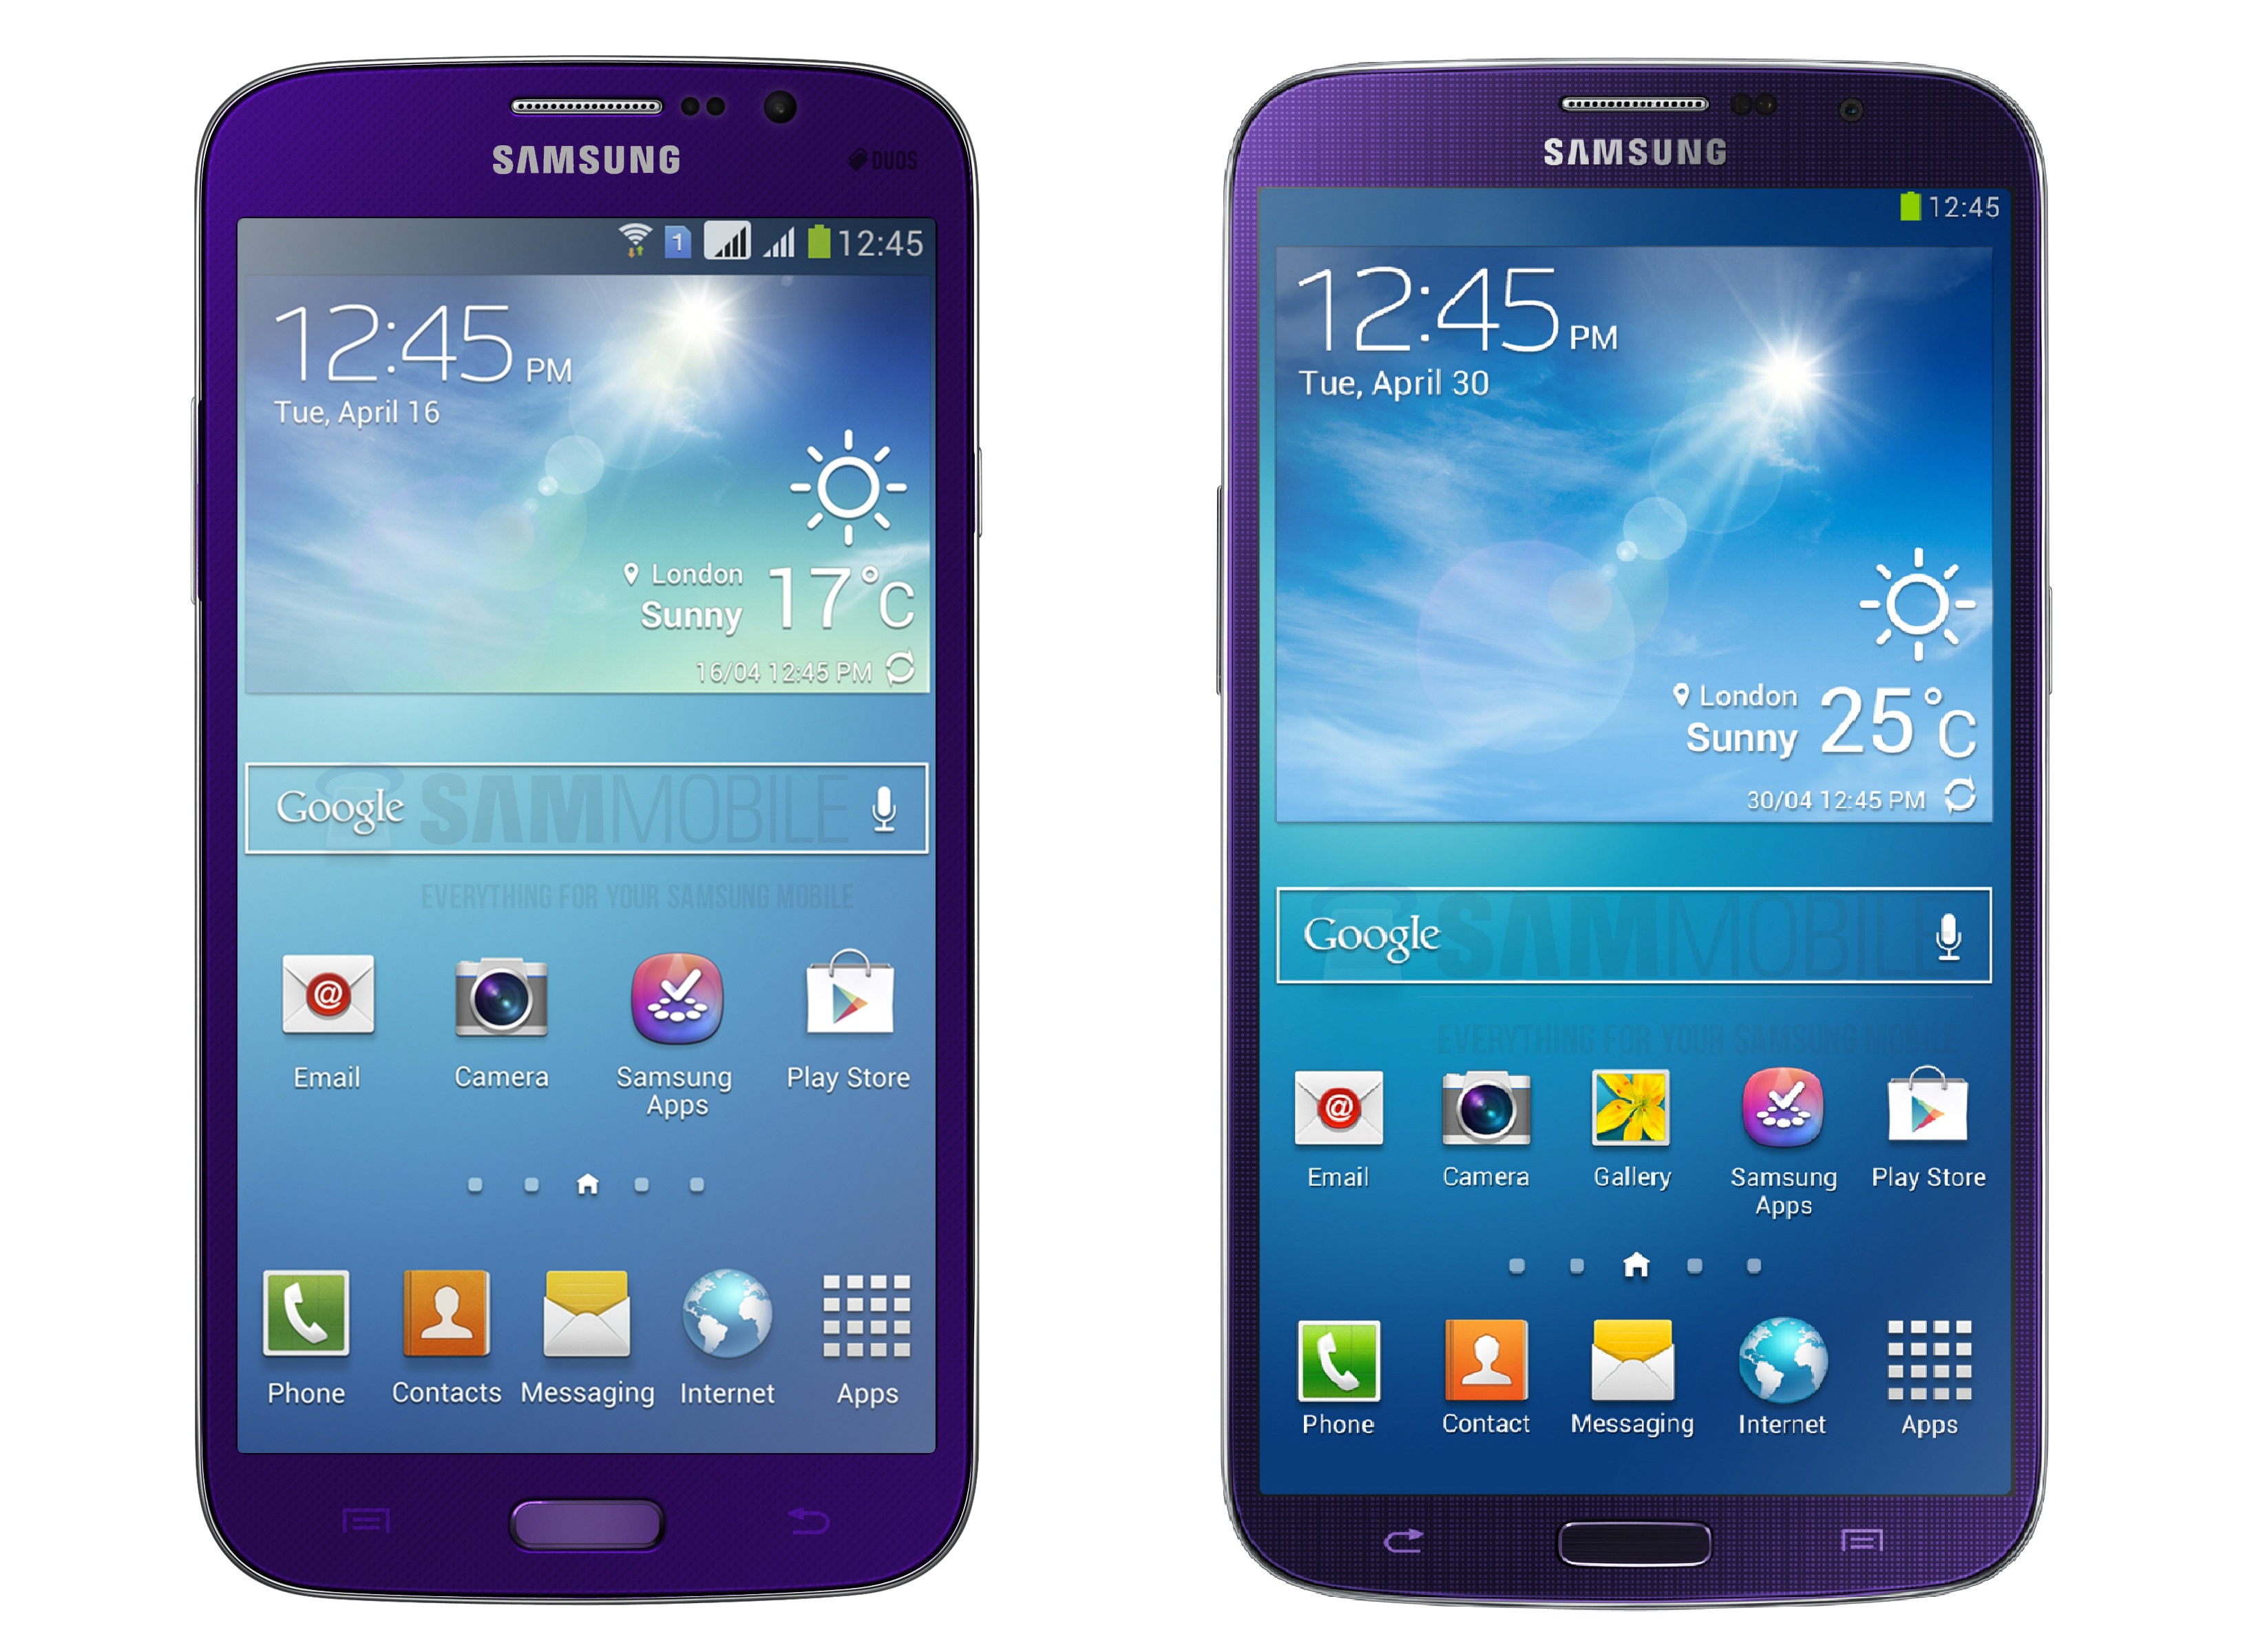 Samsung Galaxy Mega 6.3 LTE